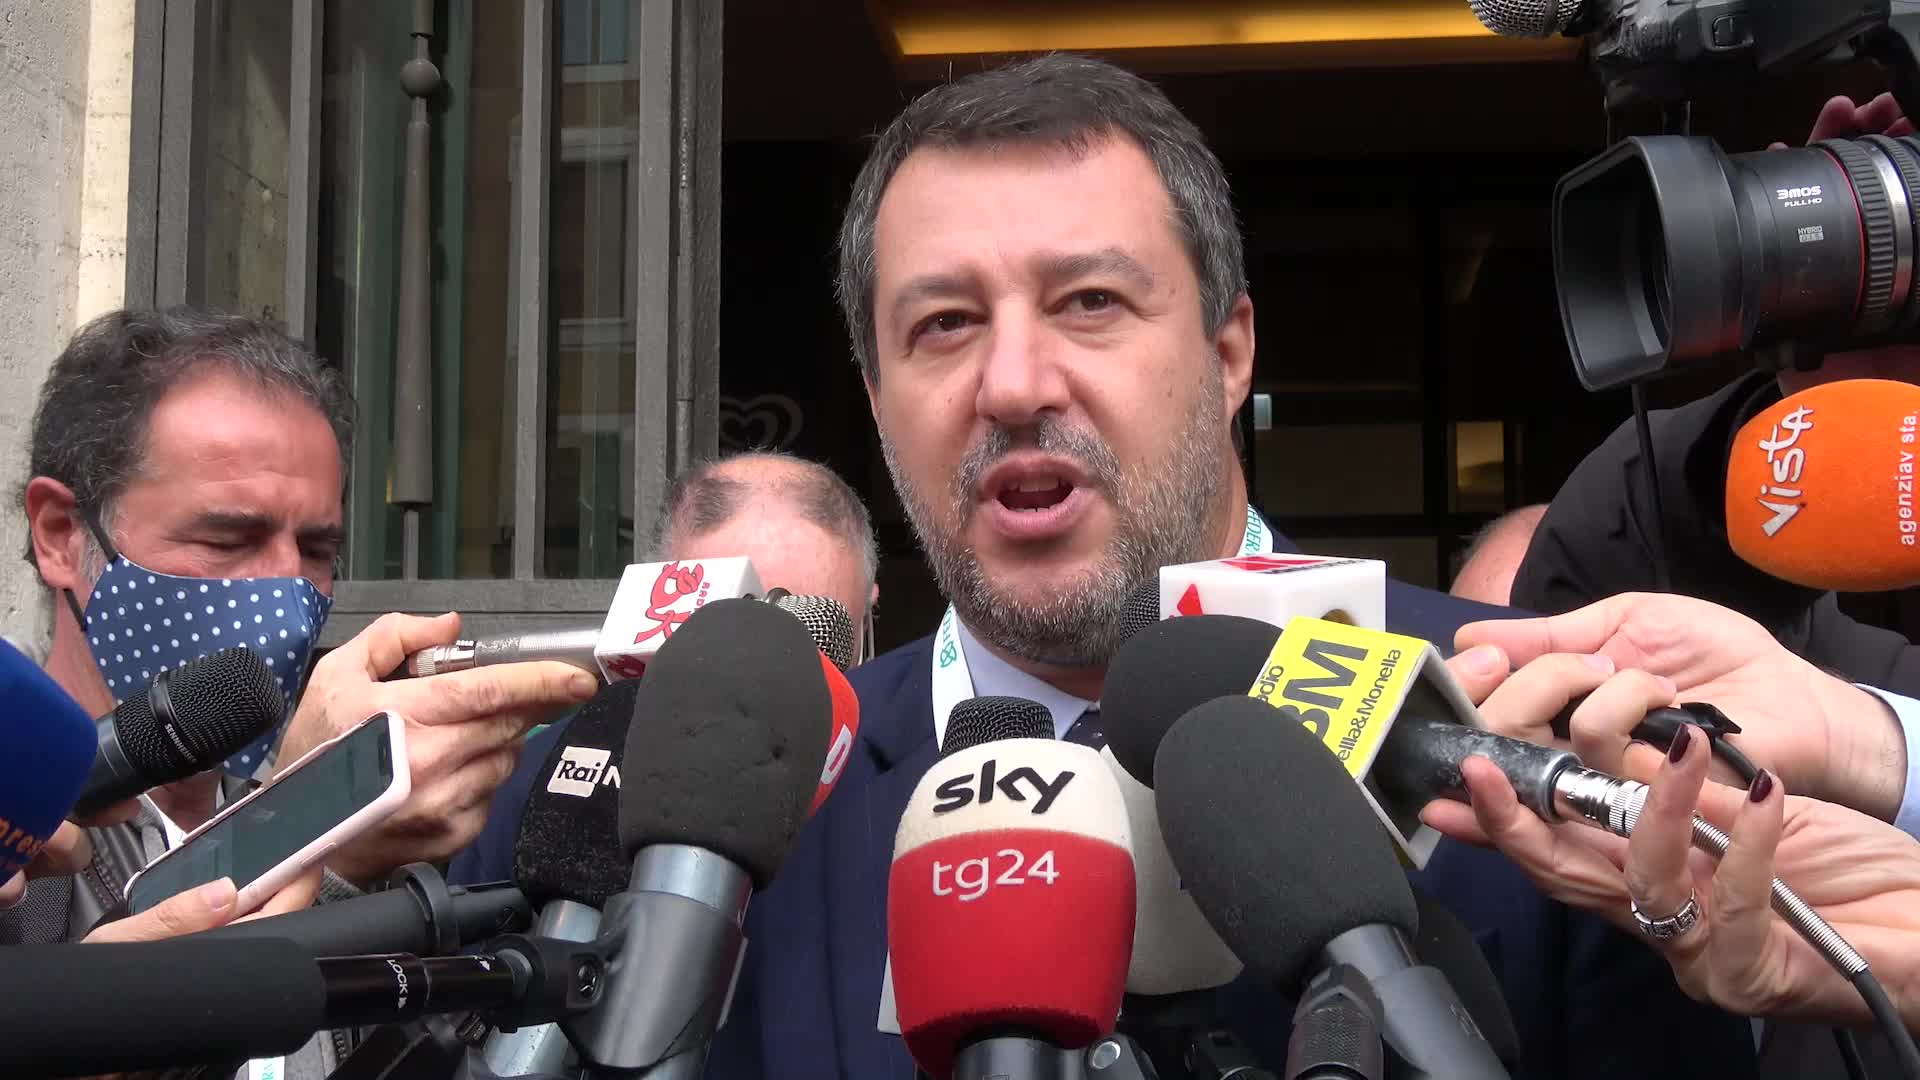 Quirinale, Salvini: "Presidente di tutti". Meloni: "No giochi di palazzo"